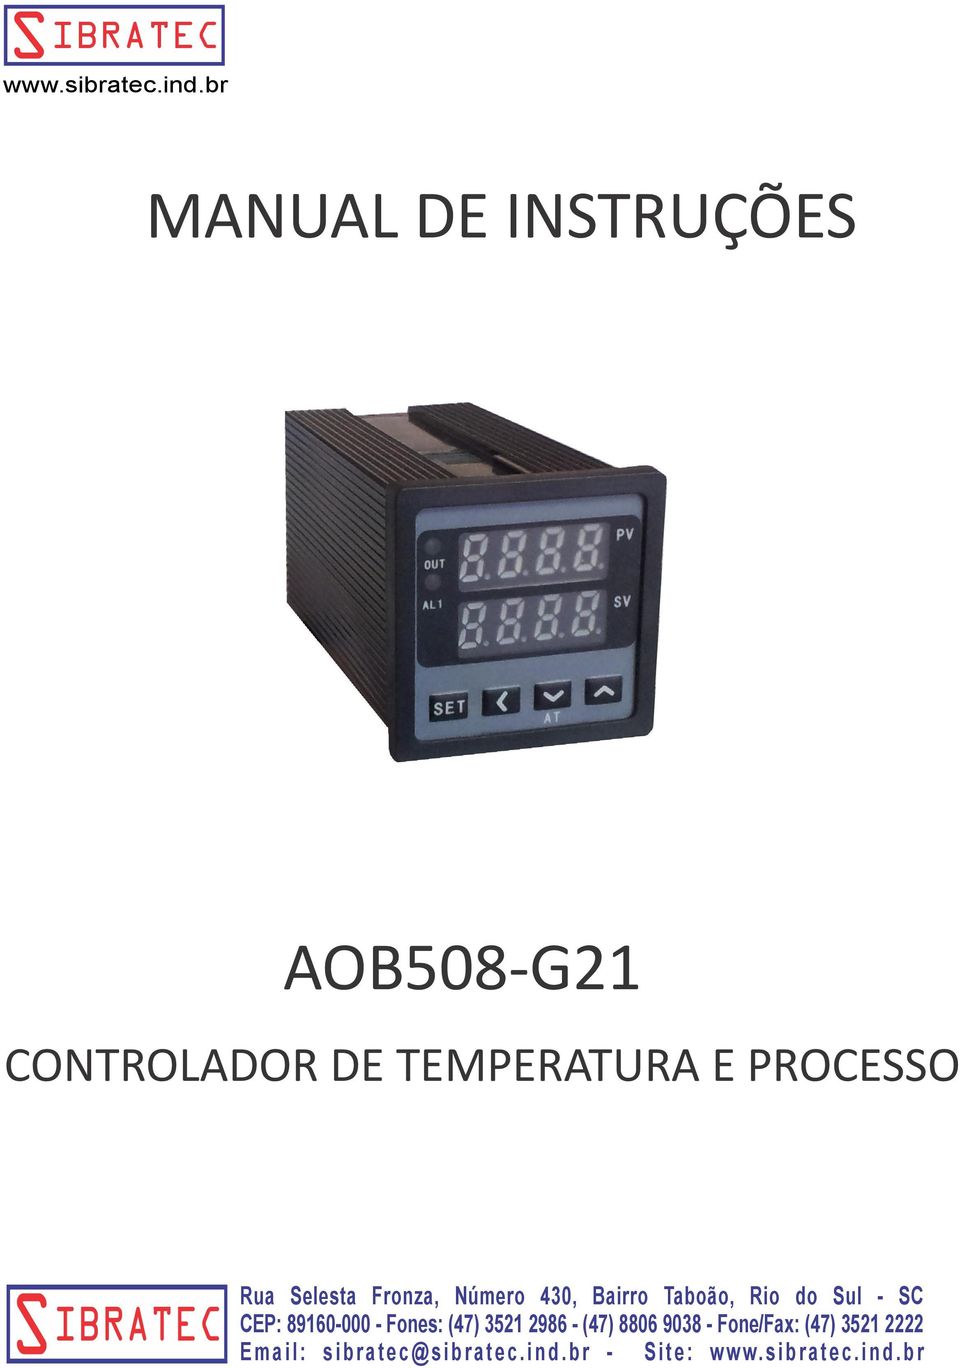 AOB508-G21 CONTROLADOR